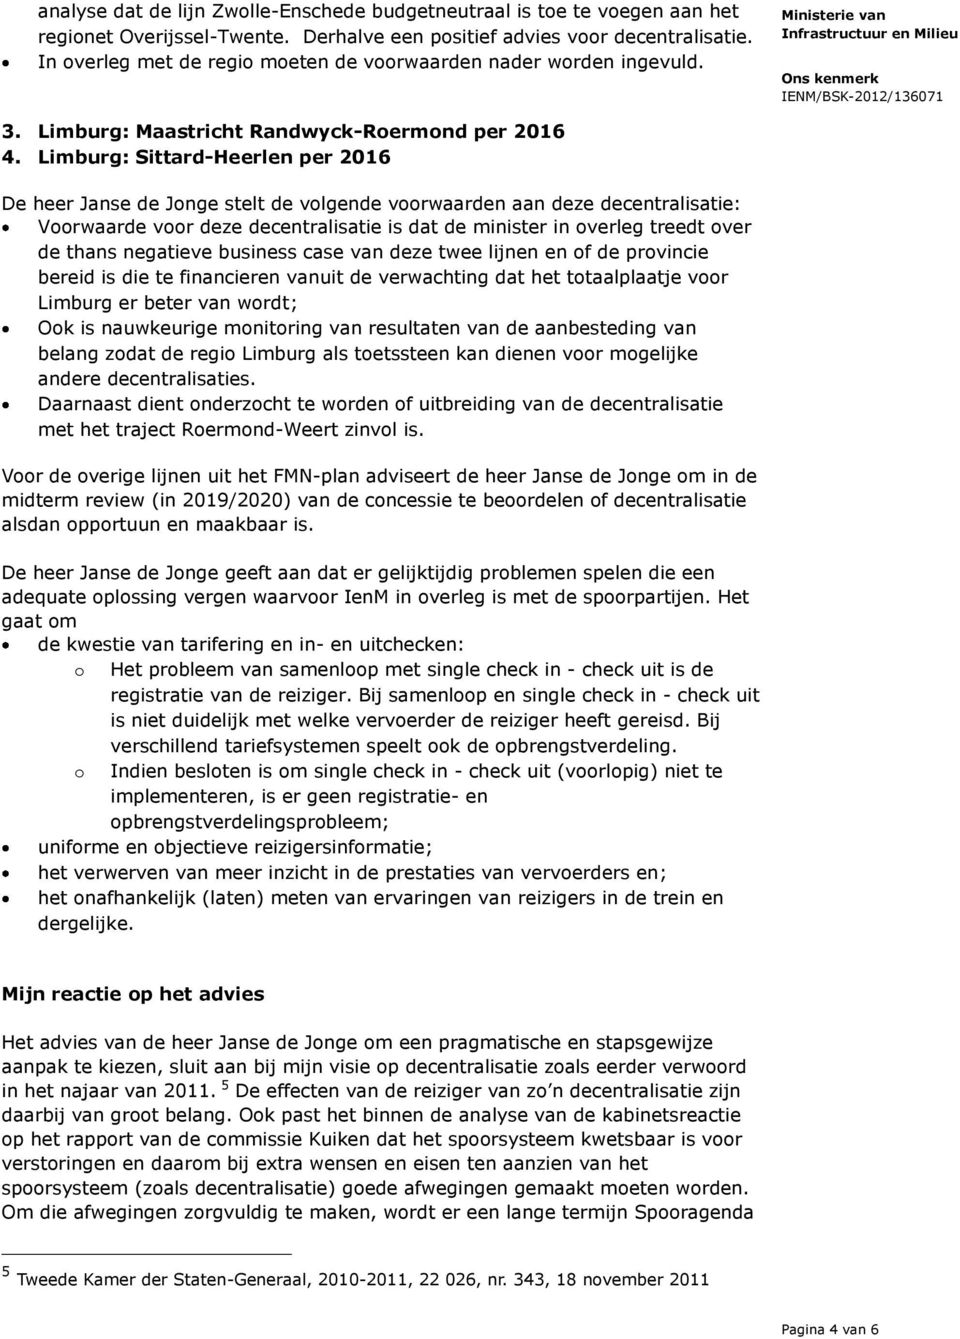 Limburg: Sittard-Heerlen per 2016 De heer Janse de Jonge stelt de volgende voorwaarden aan deze decentralisatie: Voorwaarde voor deze decentralisatie is dat de minister in overleg treedt over de